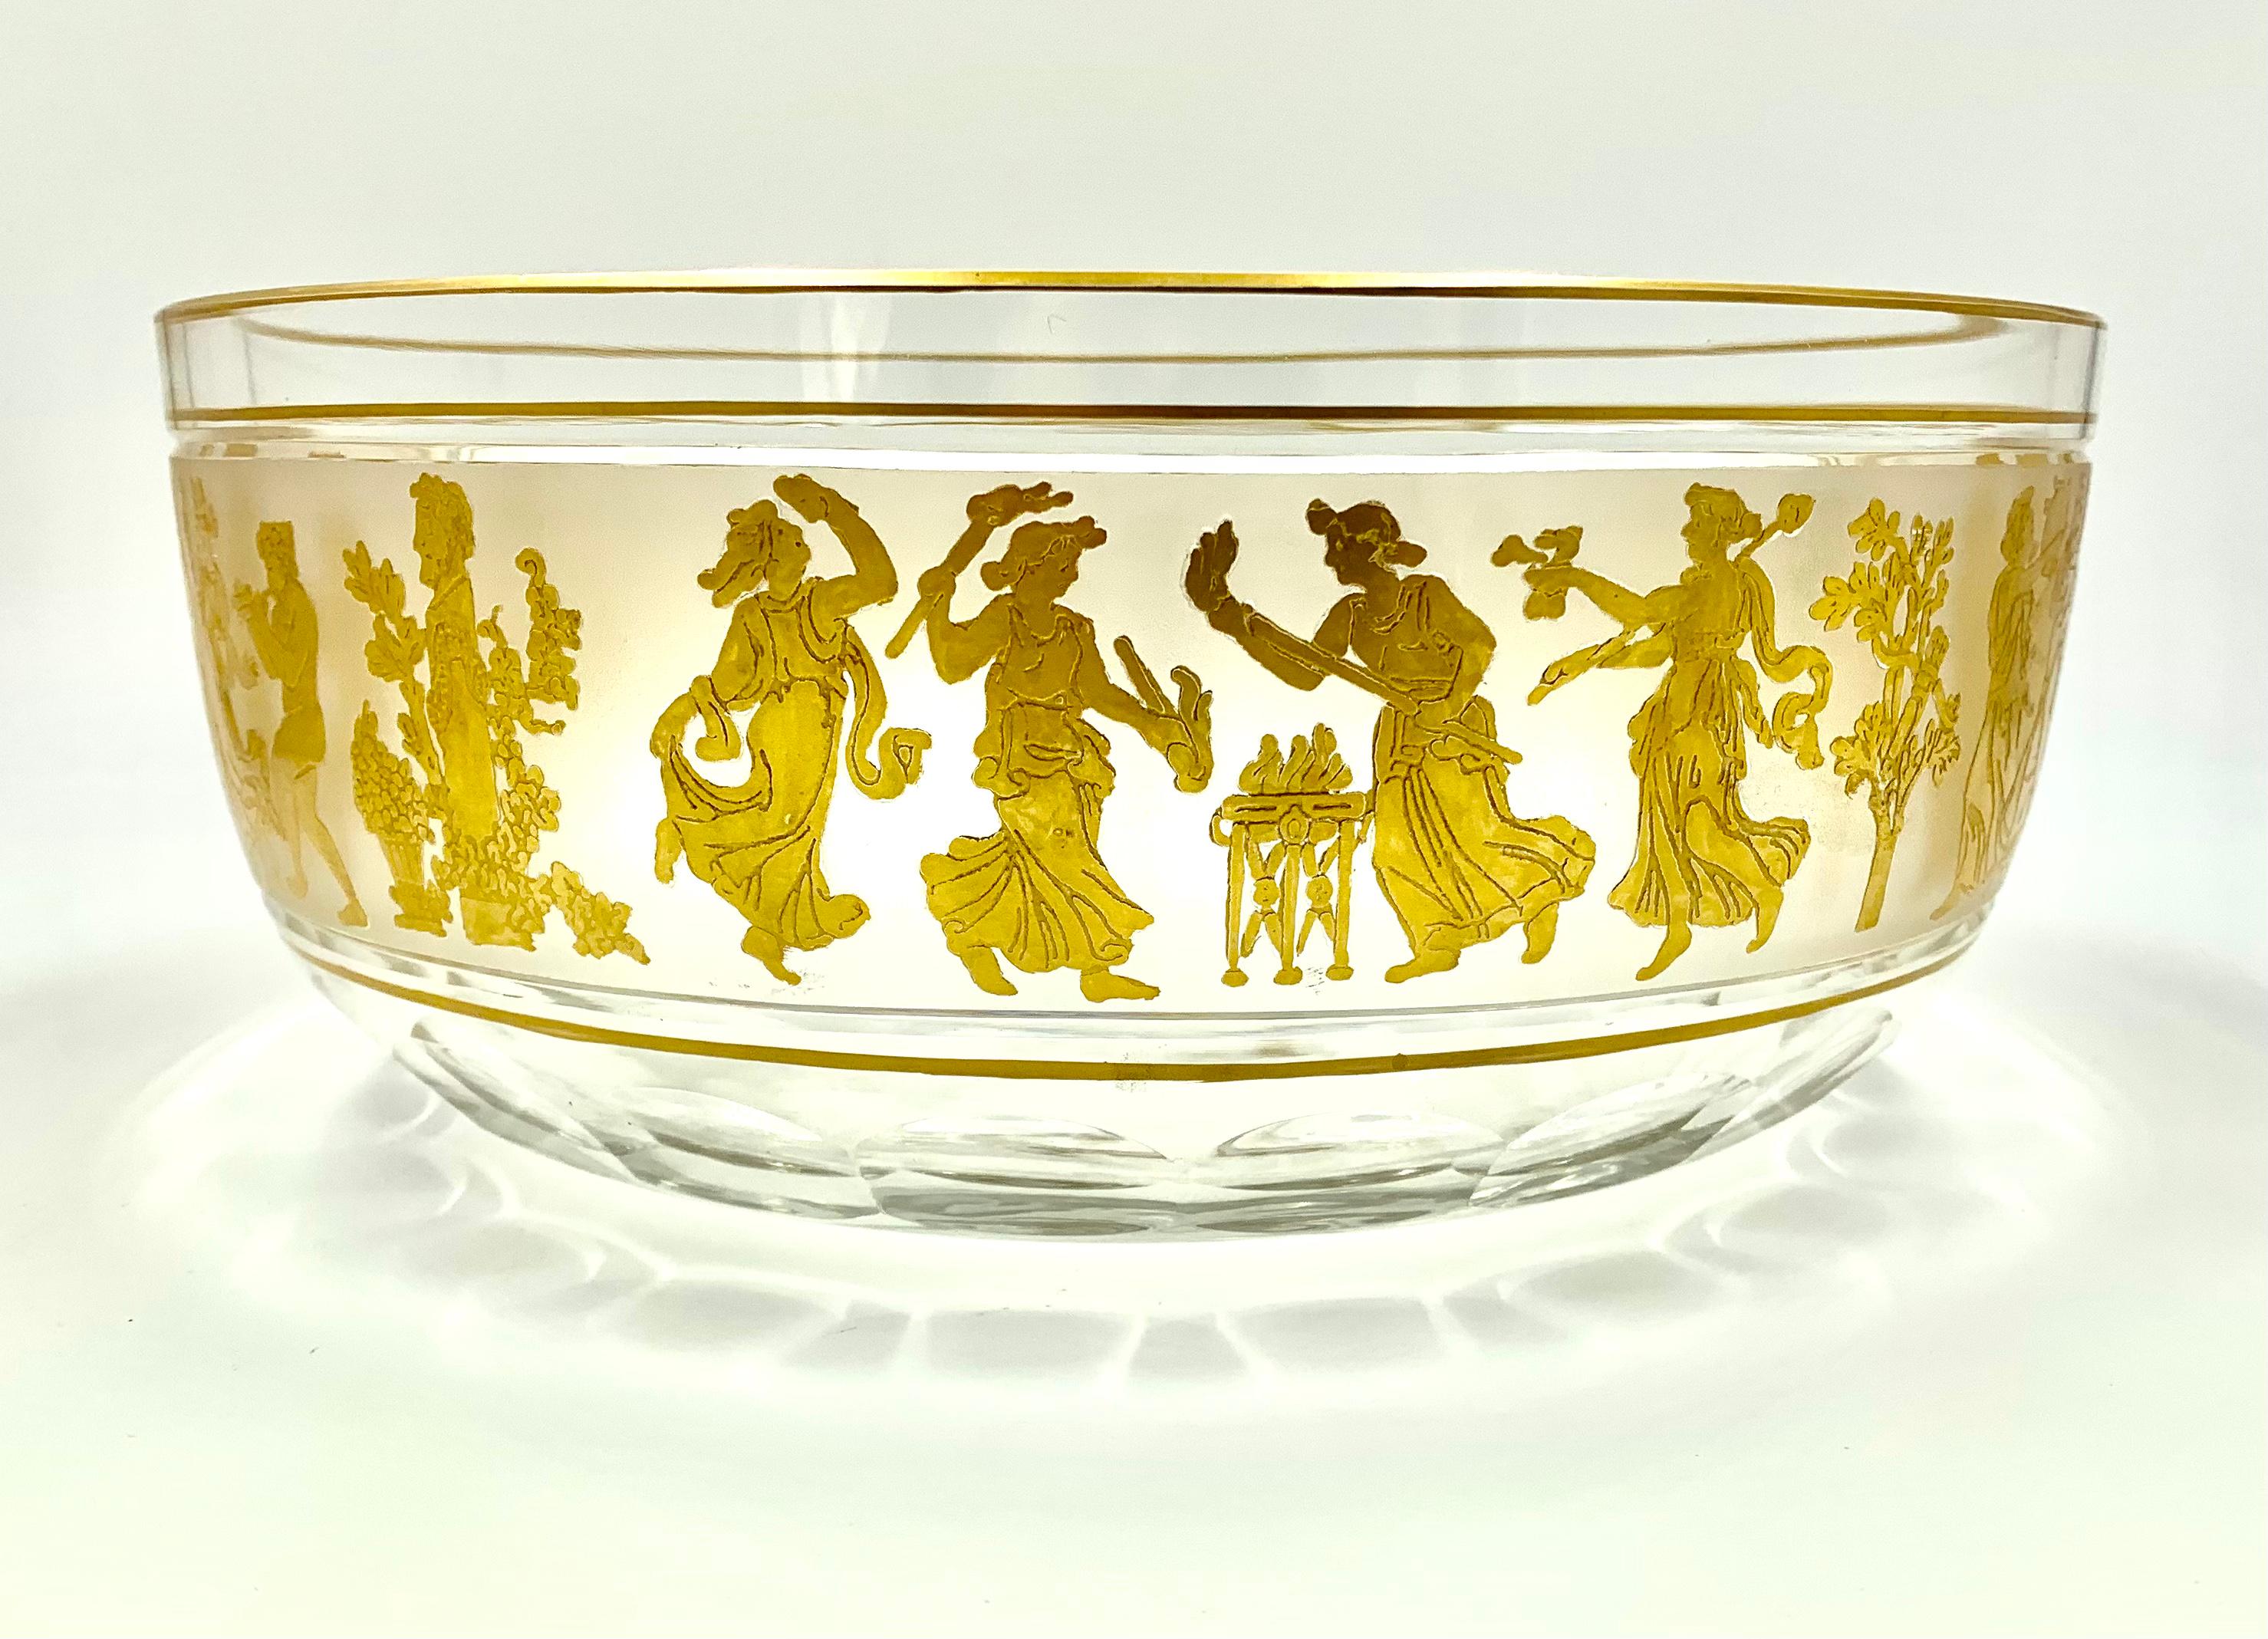 Große, schöne Val Saint Lambert-Schale mit dem berühmten Dans de Flore-Muster aus einem Nachlass. Er zeigt eine Bacchanal-Prozession im neoklassischen Stil mit tanzenden antiken griechischen Feiernden in erhabenem Gold auf einem Hintergrund aus